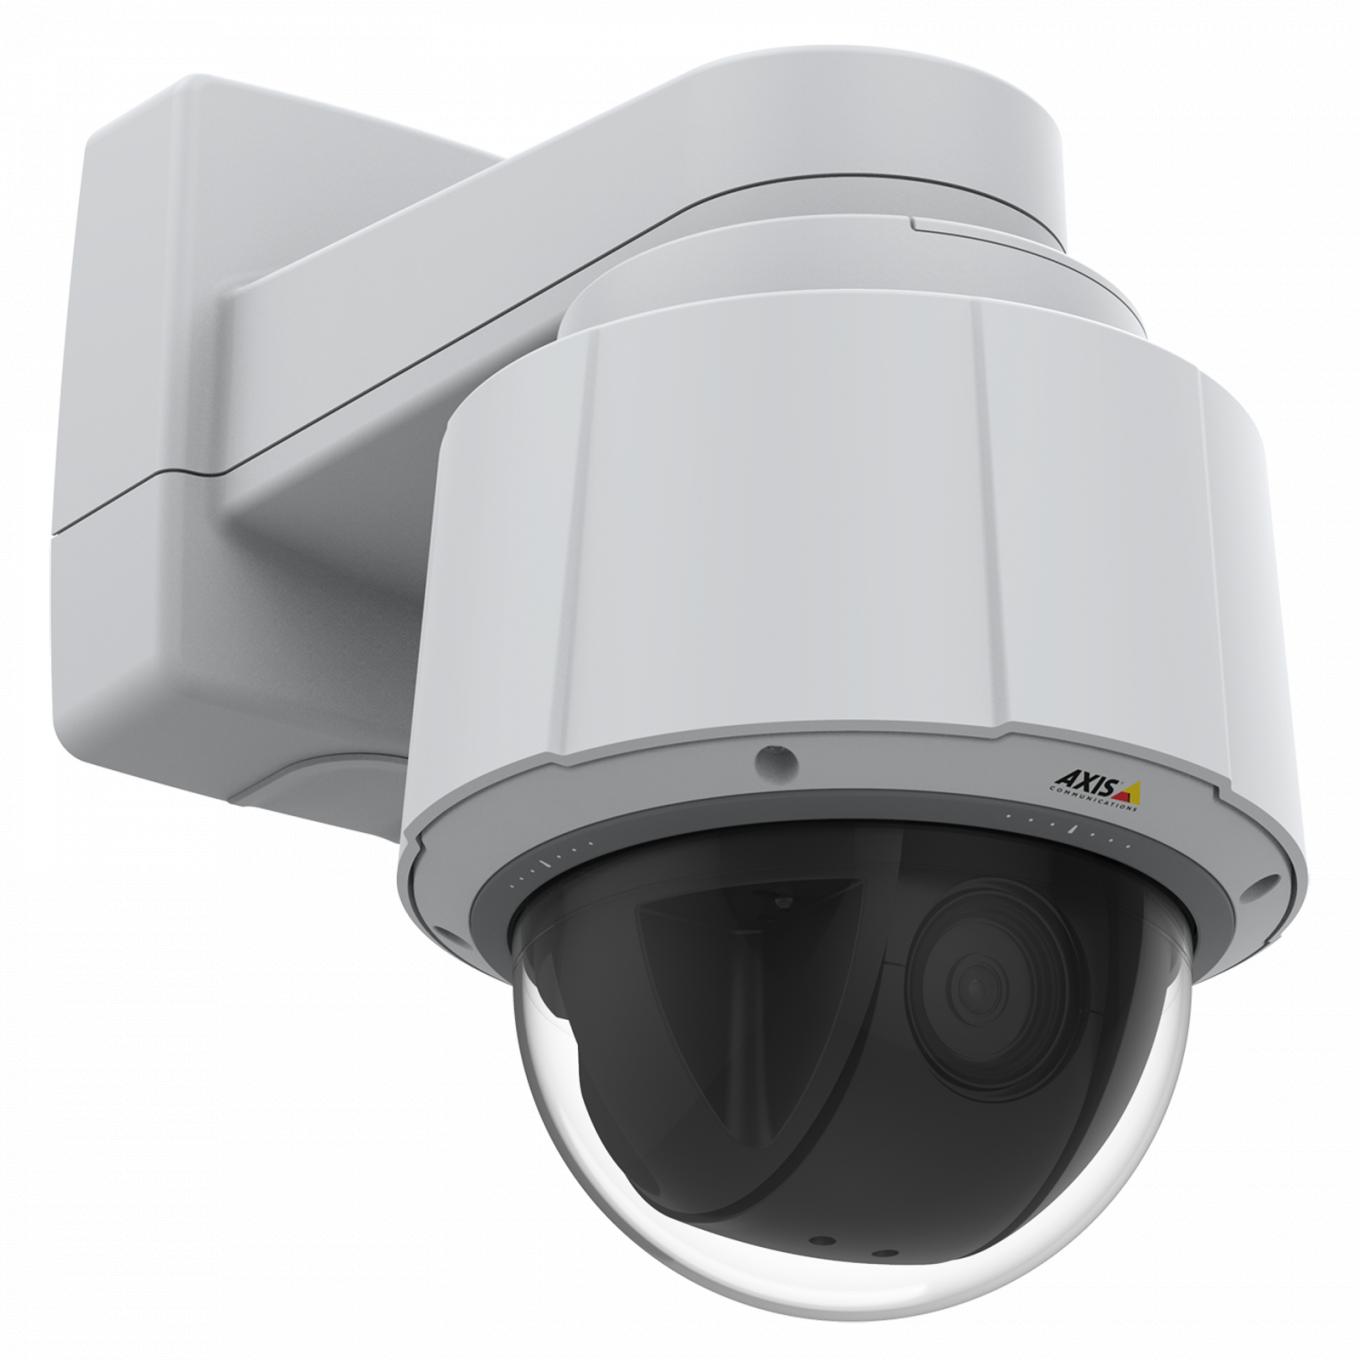 Axis IP Camera Q6075 с PTZ-камерой для помещений, с разрешением HDTV 720p и 30-кратным оптическим зумом